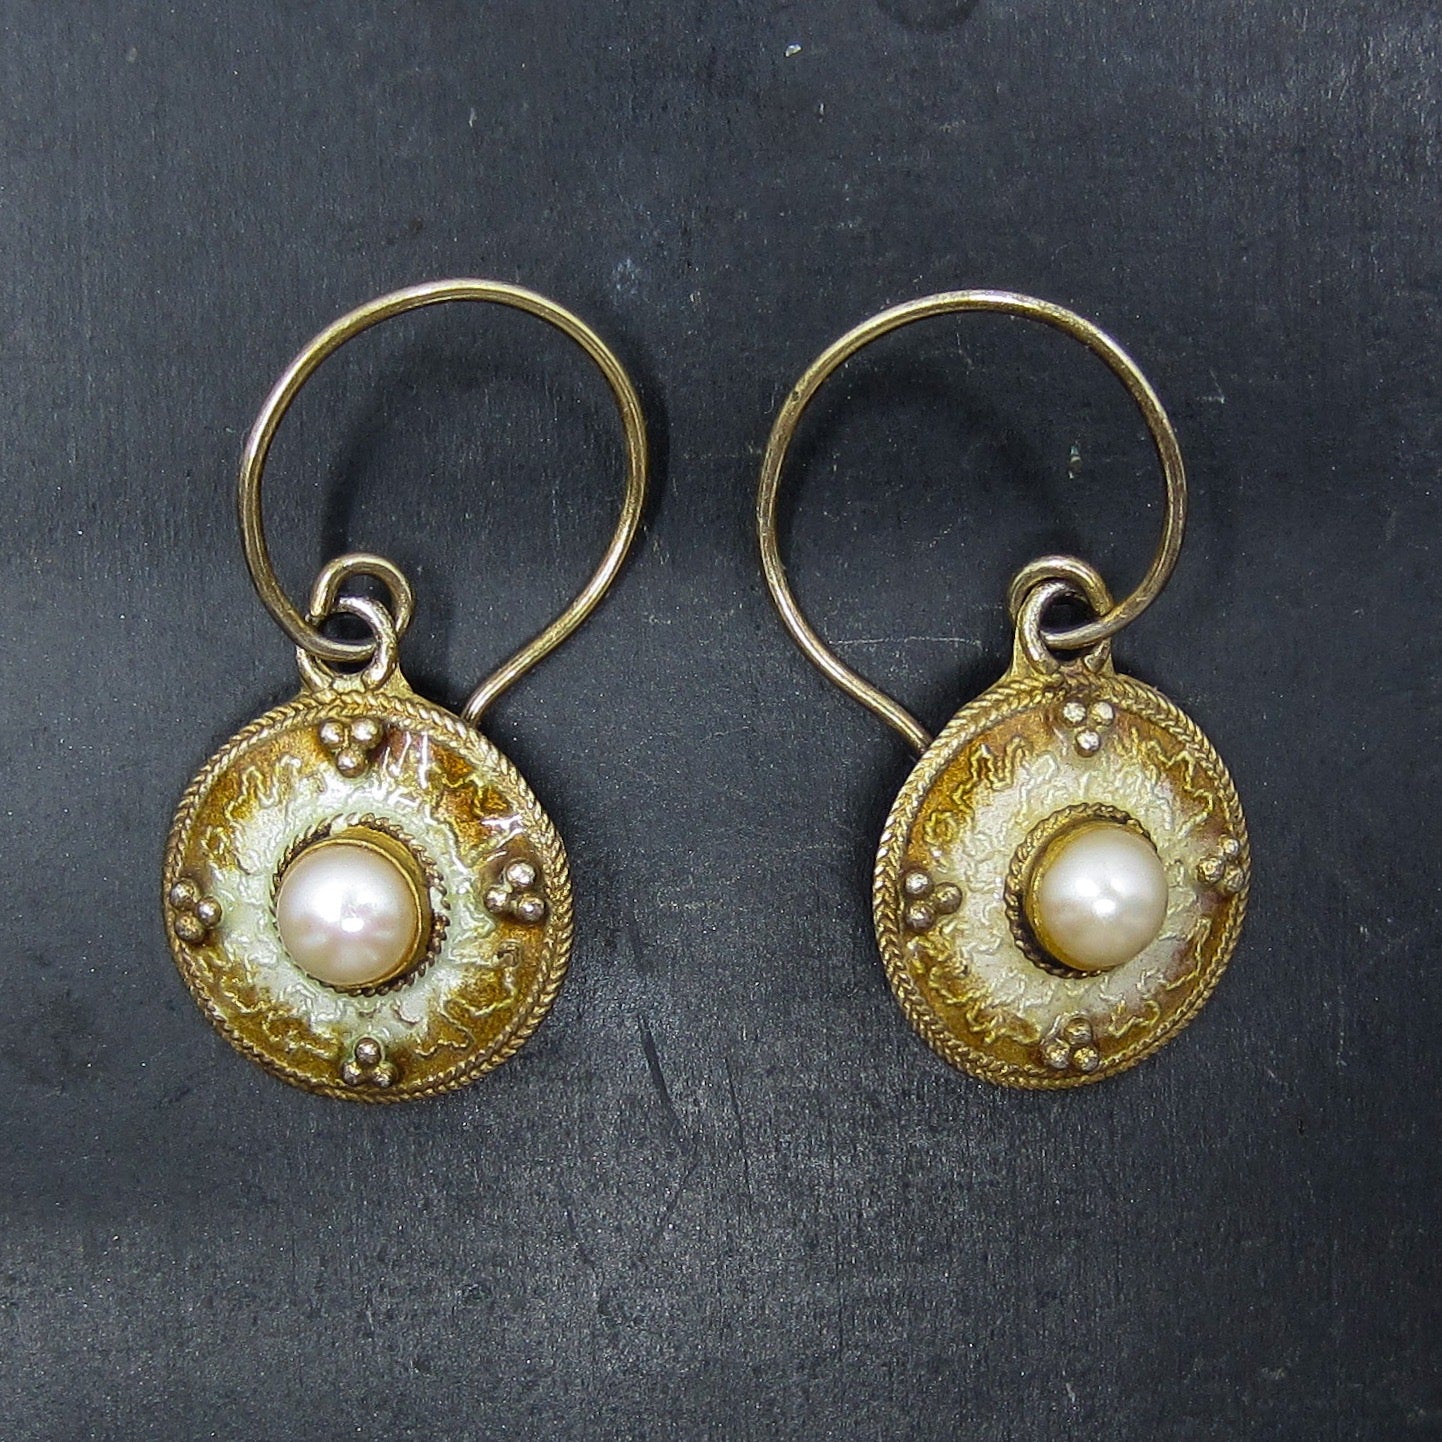 SOLD-Vintage Enamel and Pearl Drop Earrings Gilt Sterling, Scandinavian c. 1970